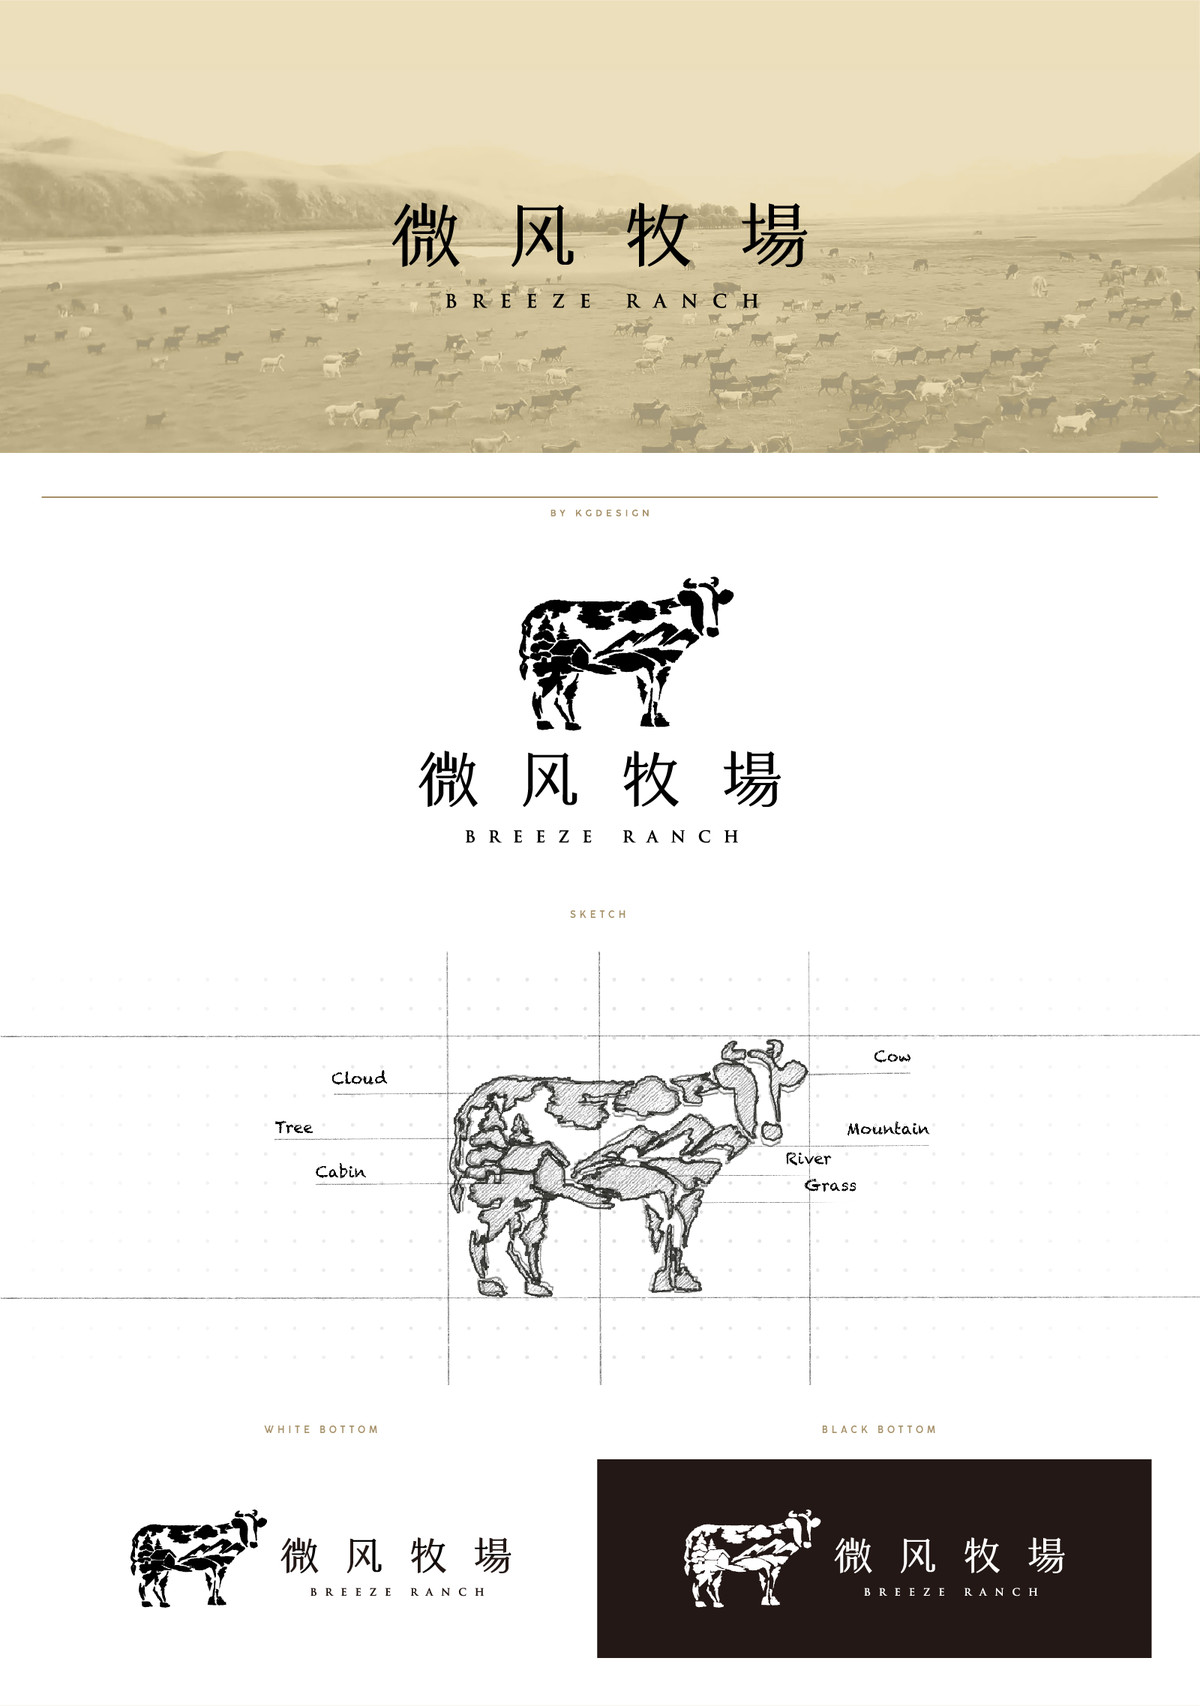 由www.kgdesign.cn完成的微风牧场Logo设计